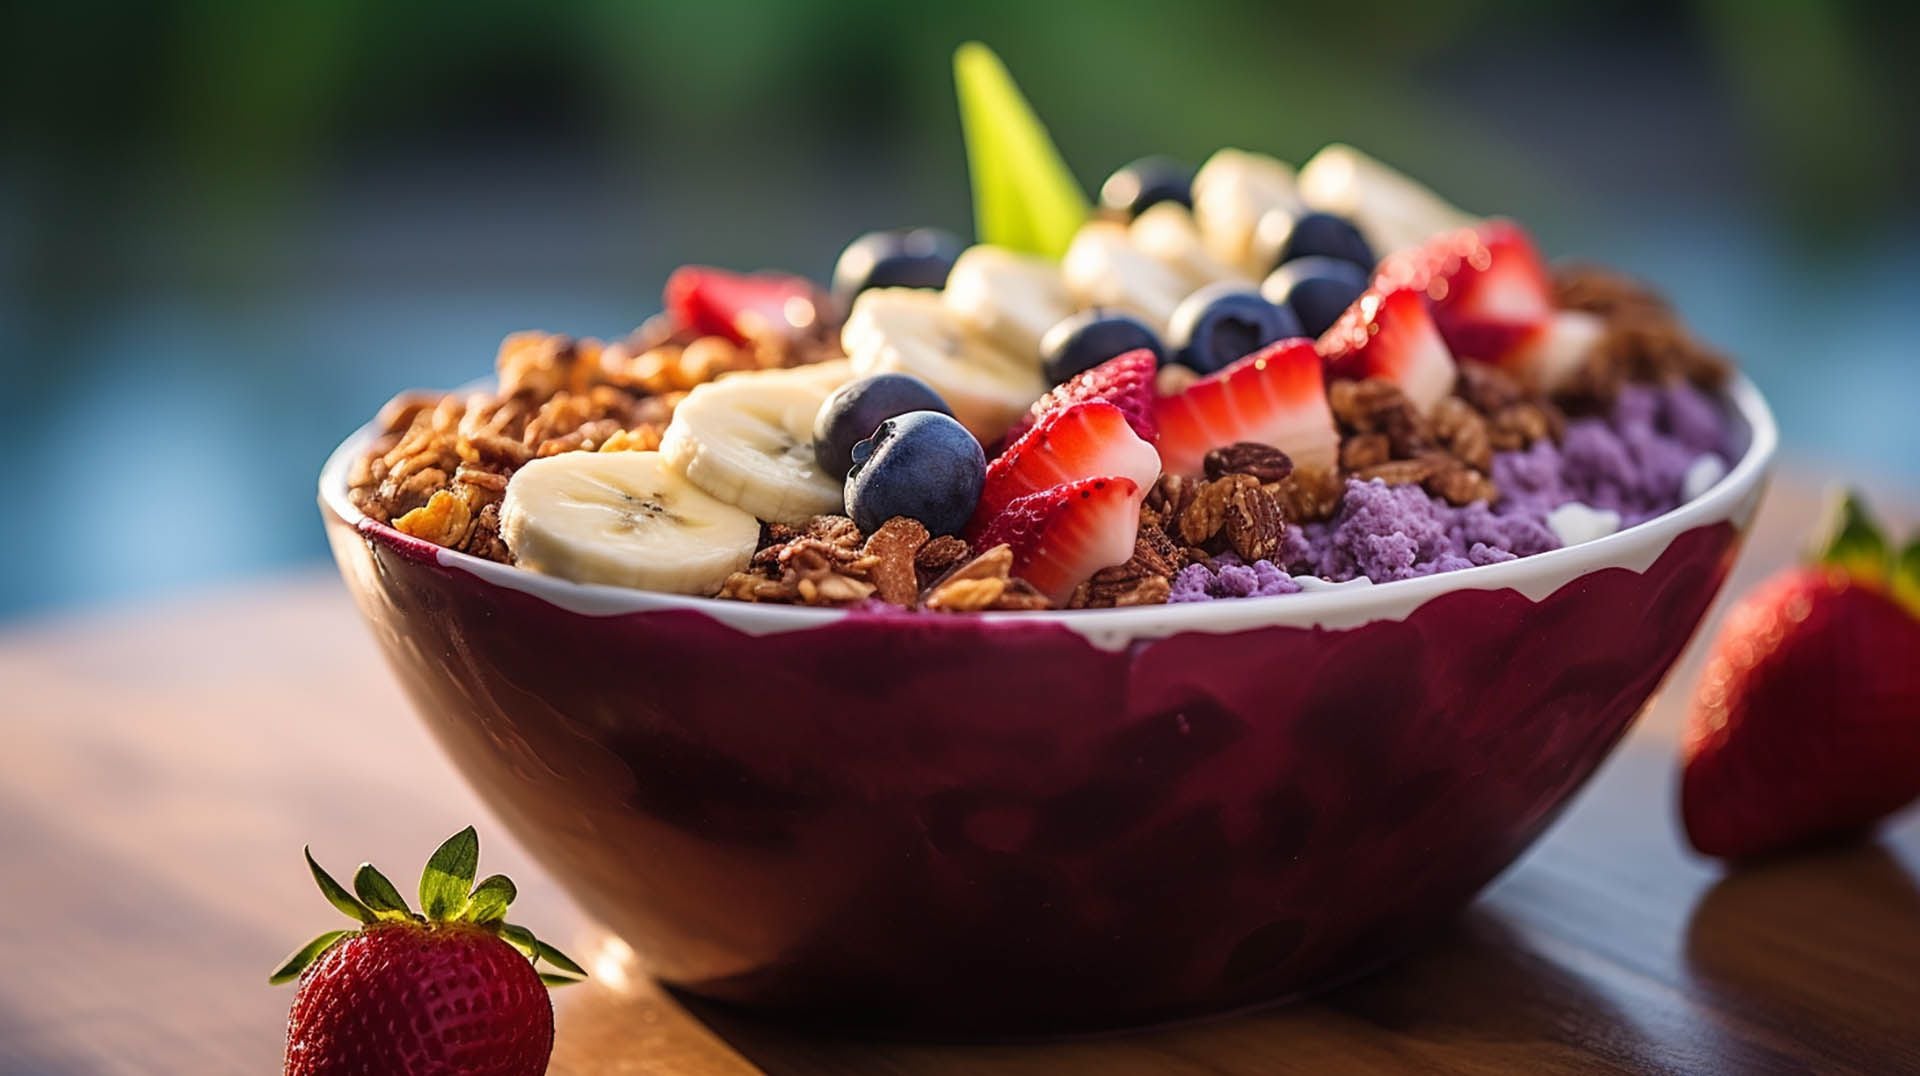 Un delicioso y colorido bowl de açaí lleno de nutrientes. La base de açaí púrpura oscuro está cubierta con una variedad de frutas frescas, nueces y semillas, creando una comida saludable y visualmente atractiva.